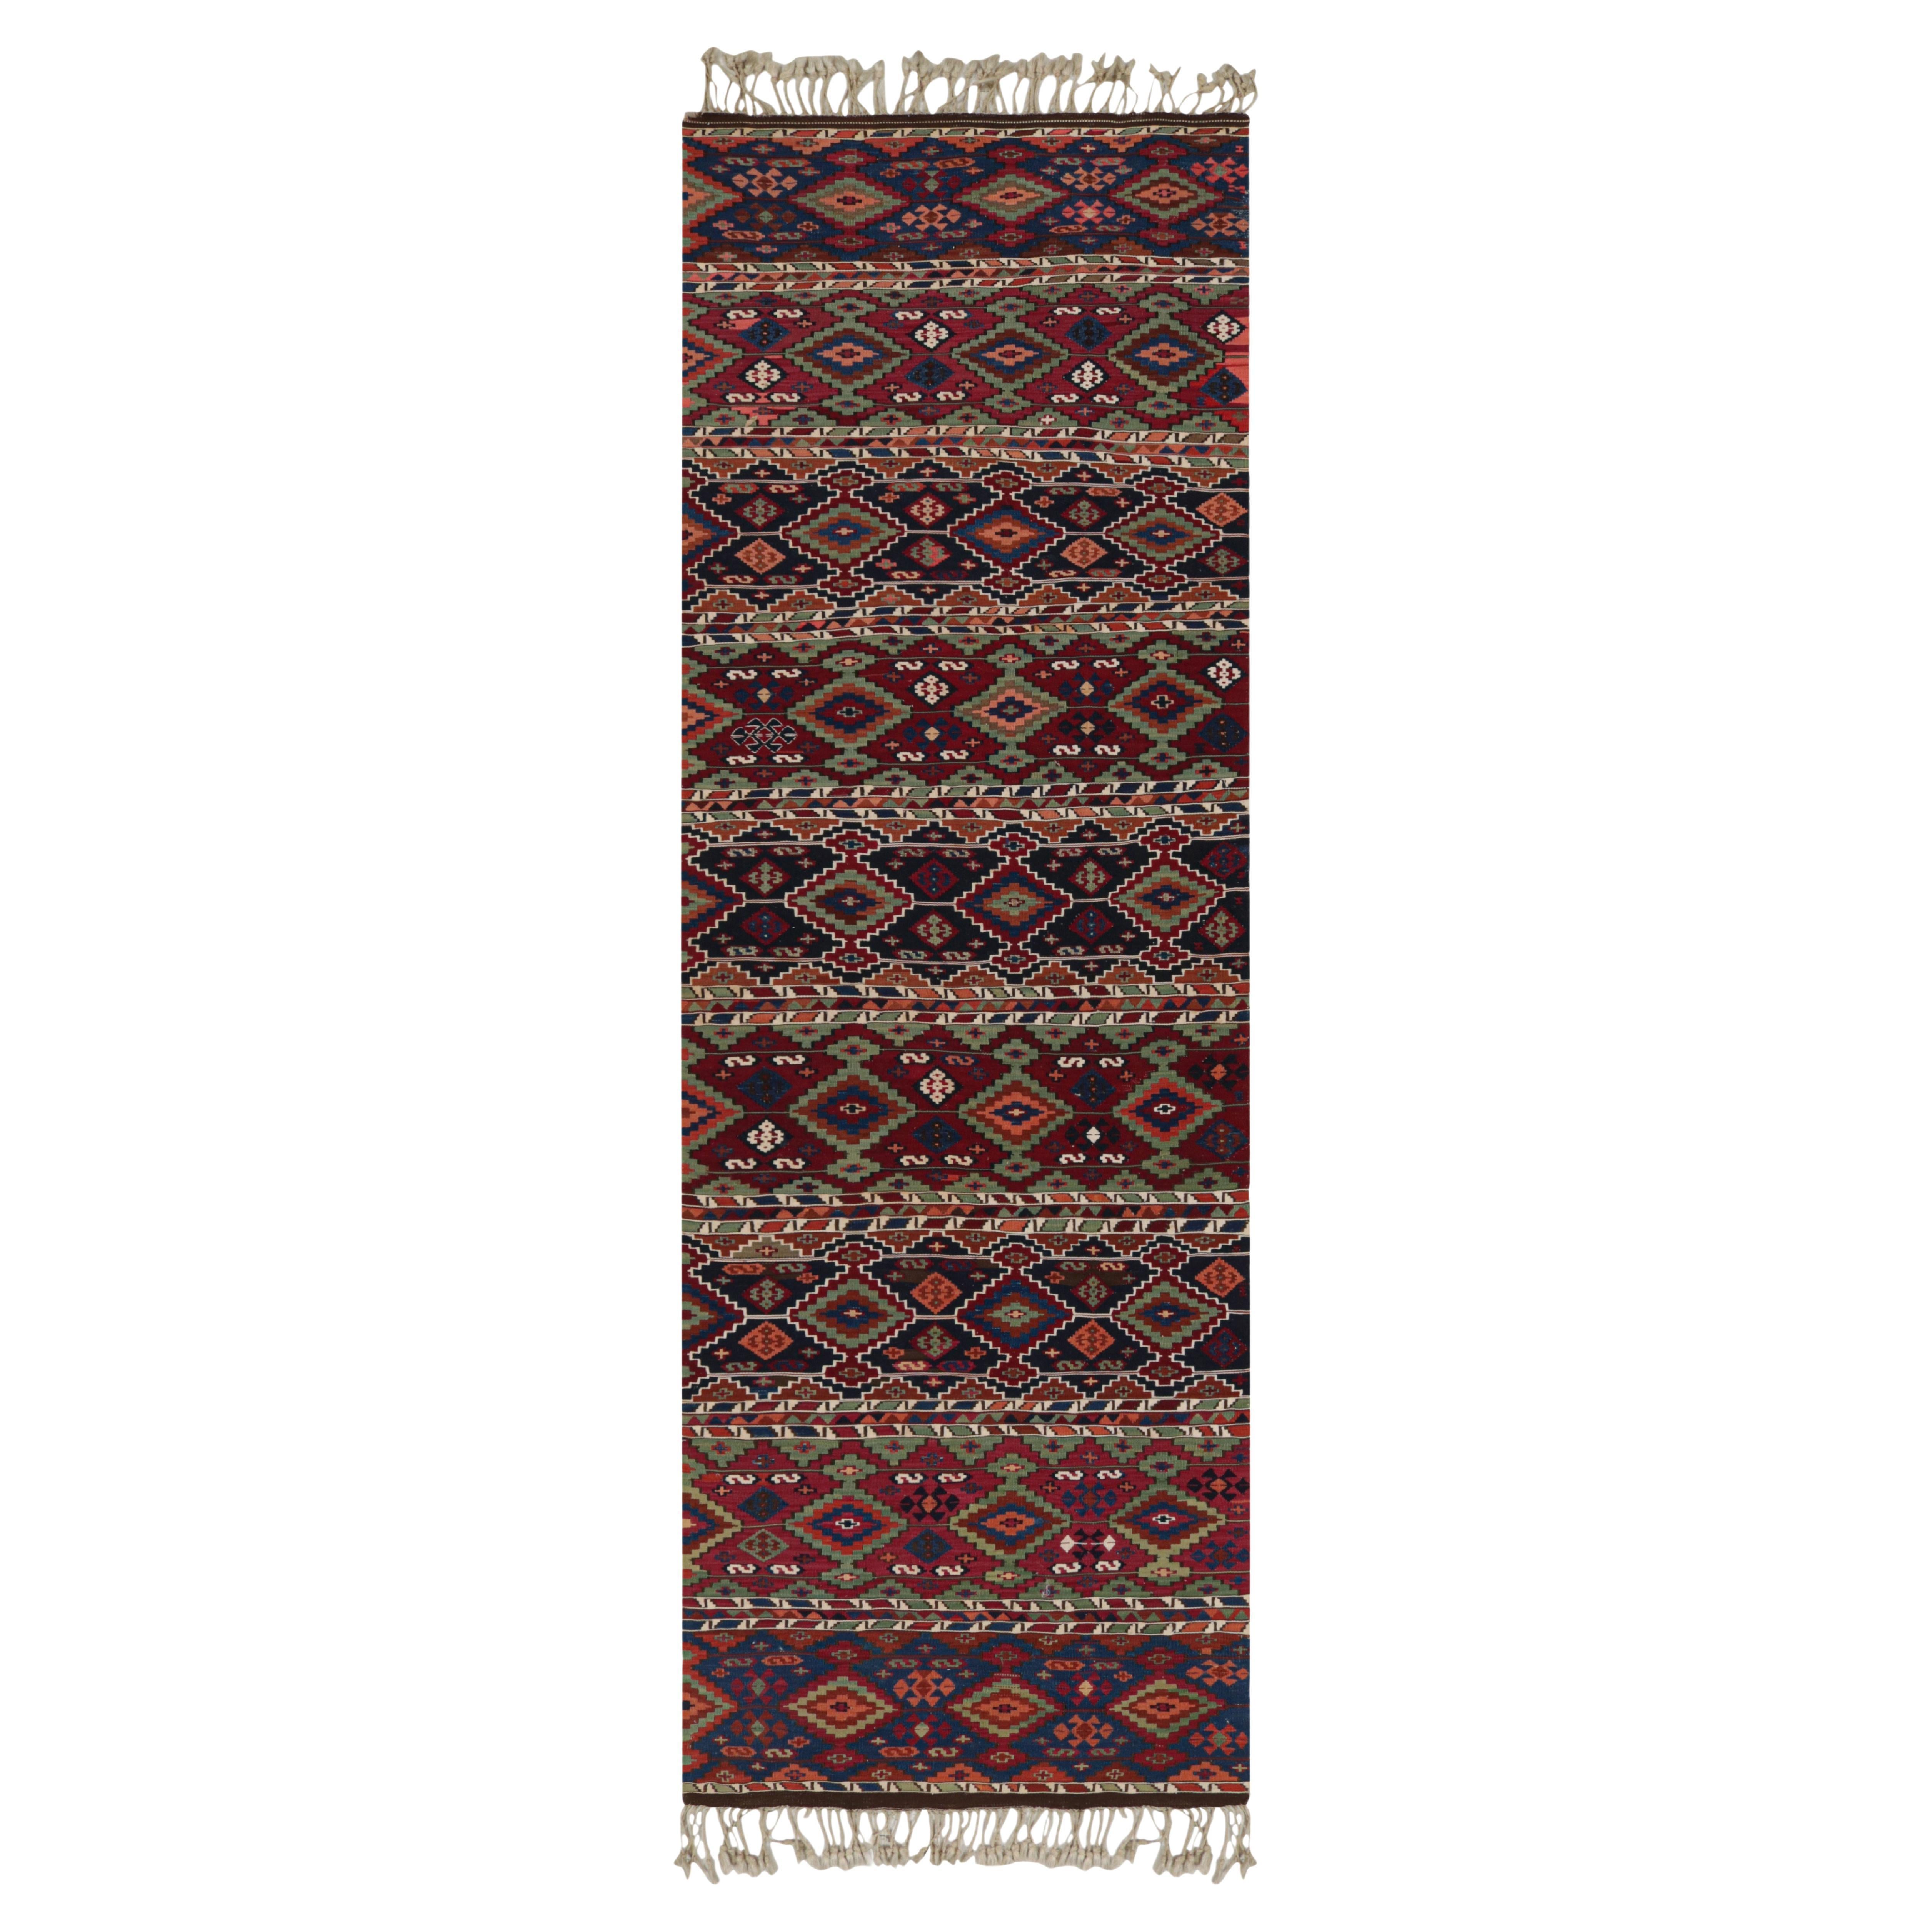 Tapis Kilim turc ancien en laine multicolore rouge et bleu par Rug & Kilim